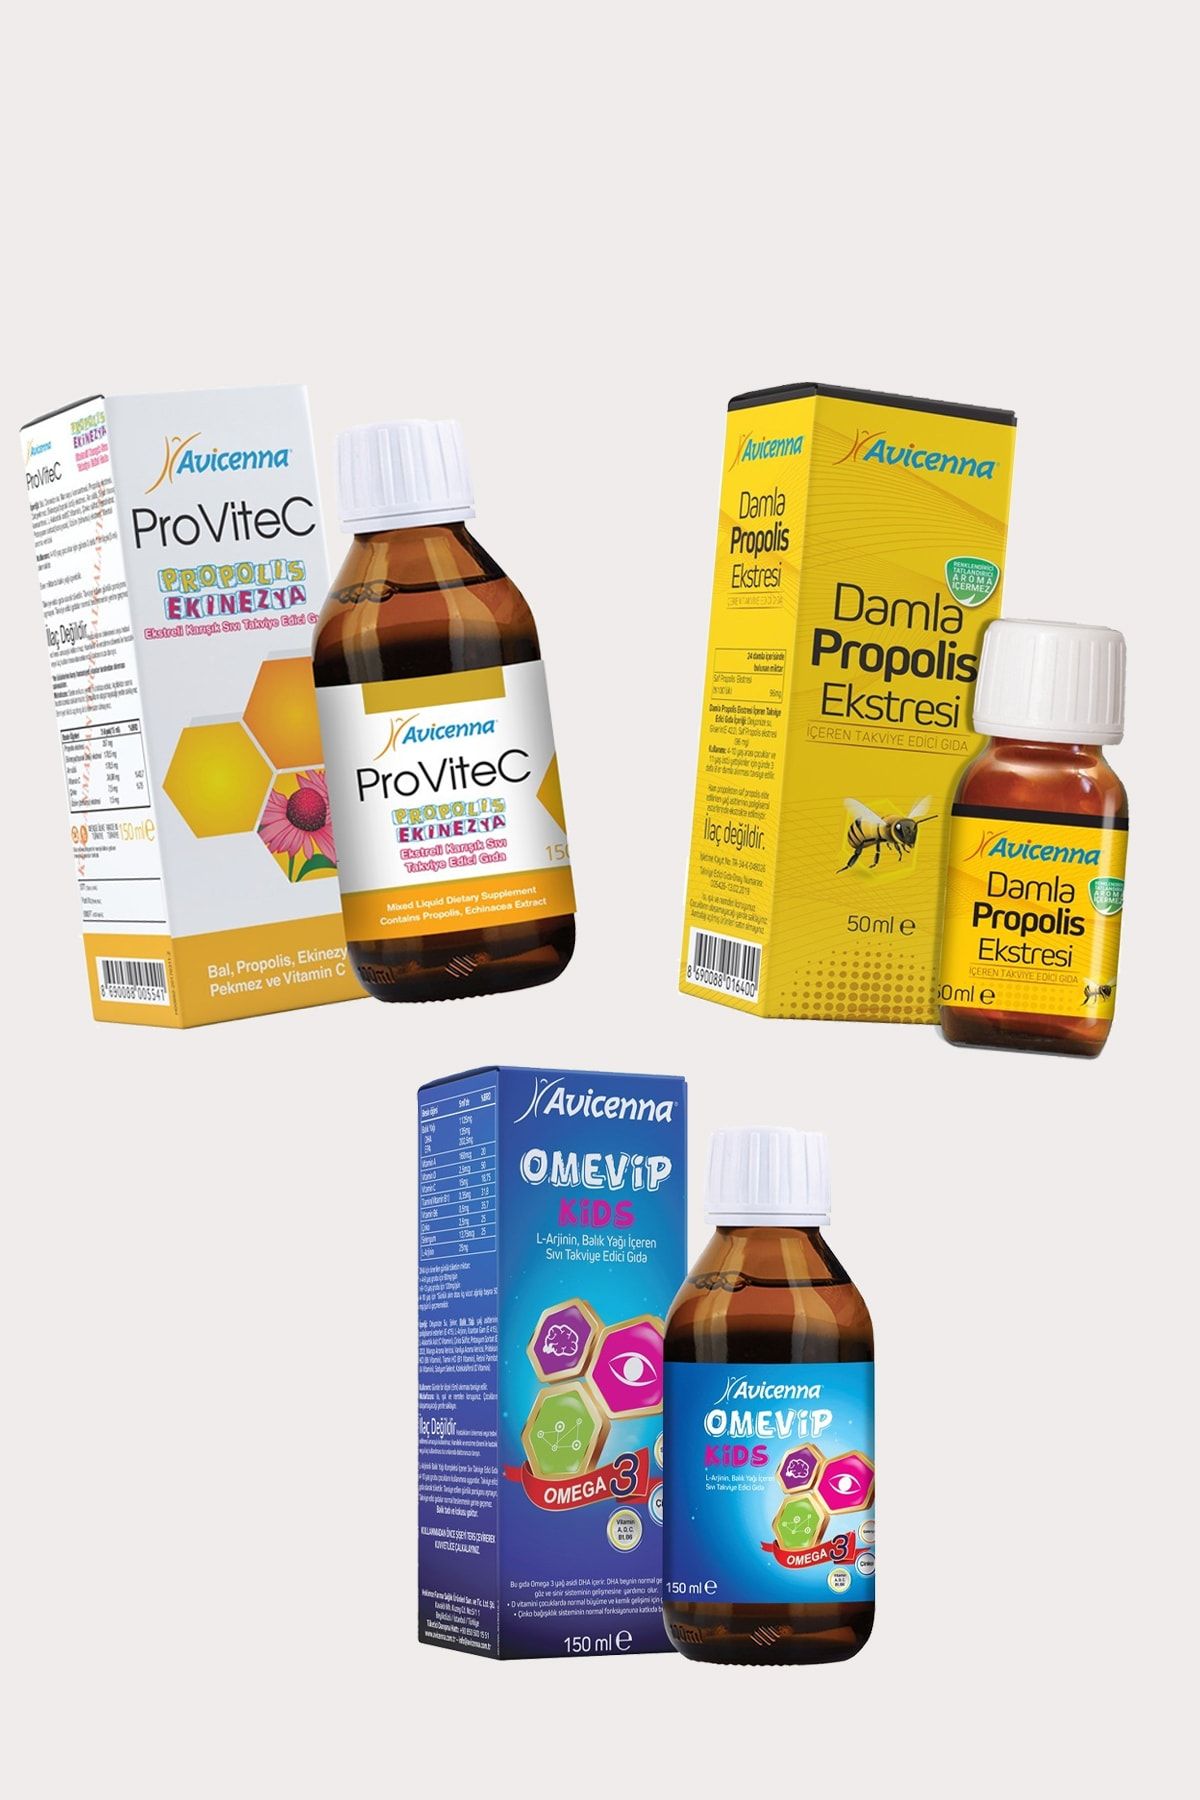 Avicenna Propolis, Omevip Kids Ve Provitec - Çocuklar Için Propolis / Omega 3 / C Vitamini Seti